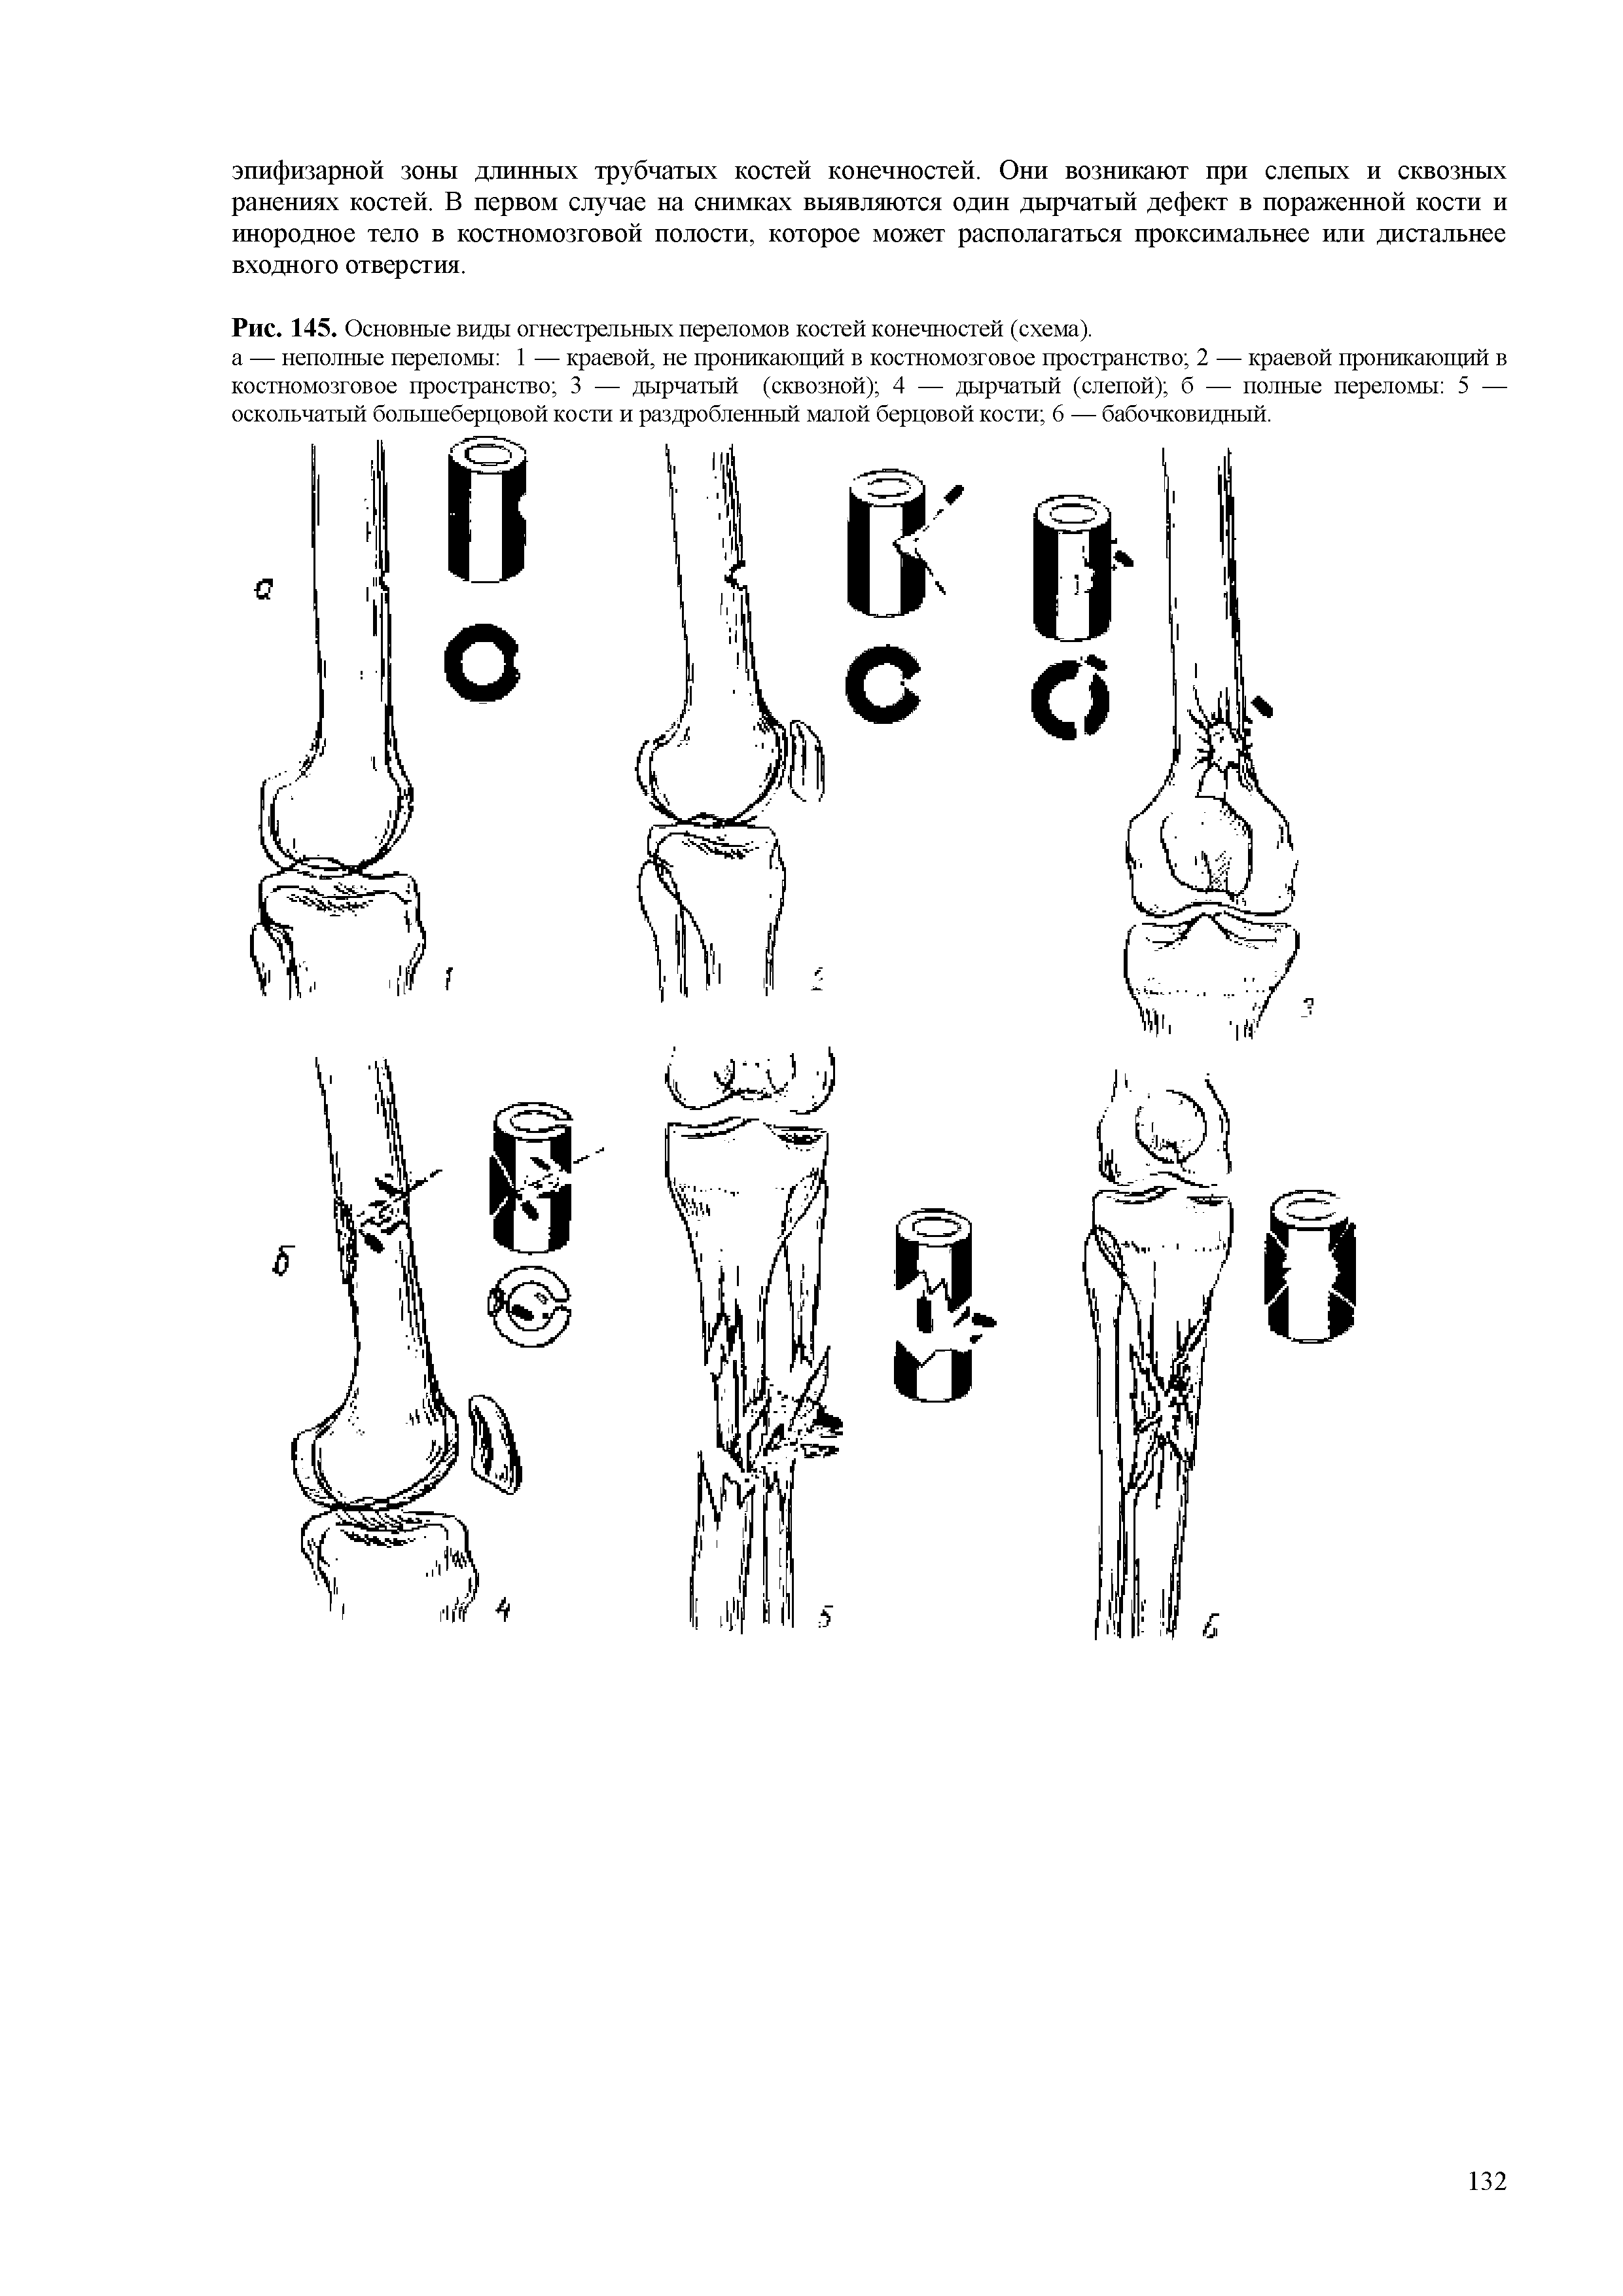 Рис. 145. Основные виды огнестрельных переломов костей конечностей (схема).